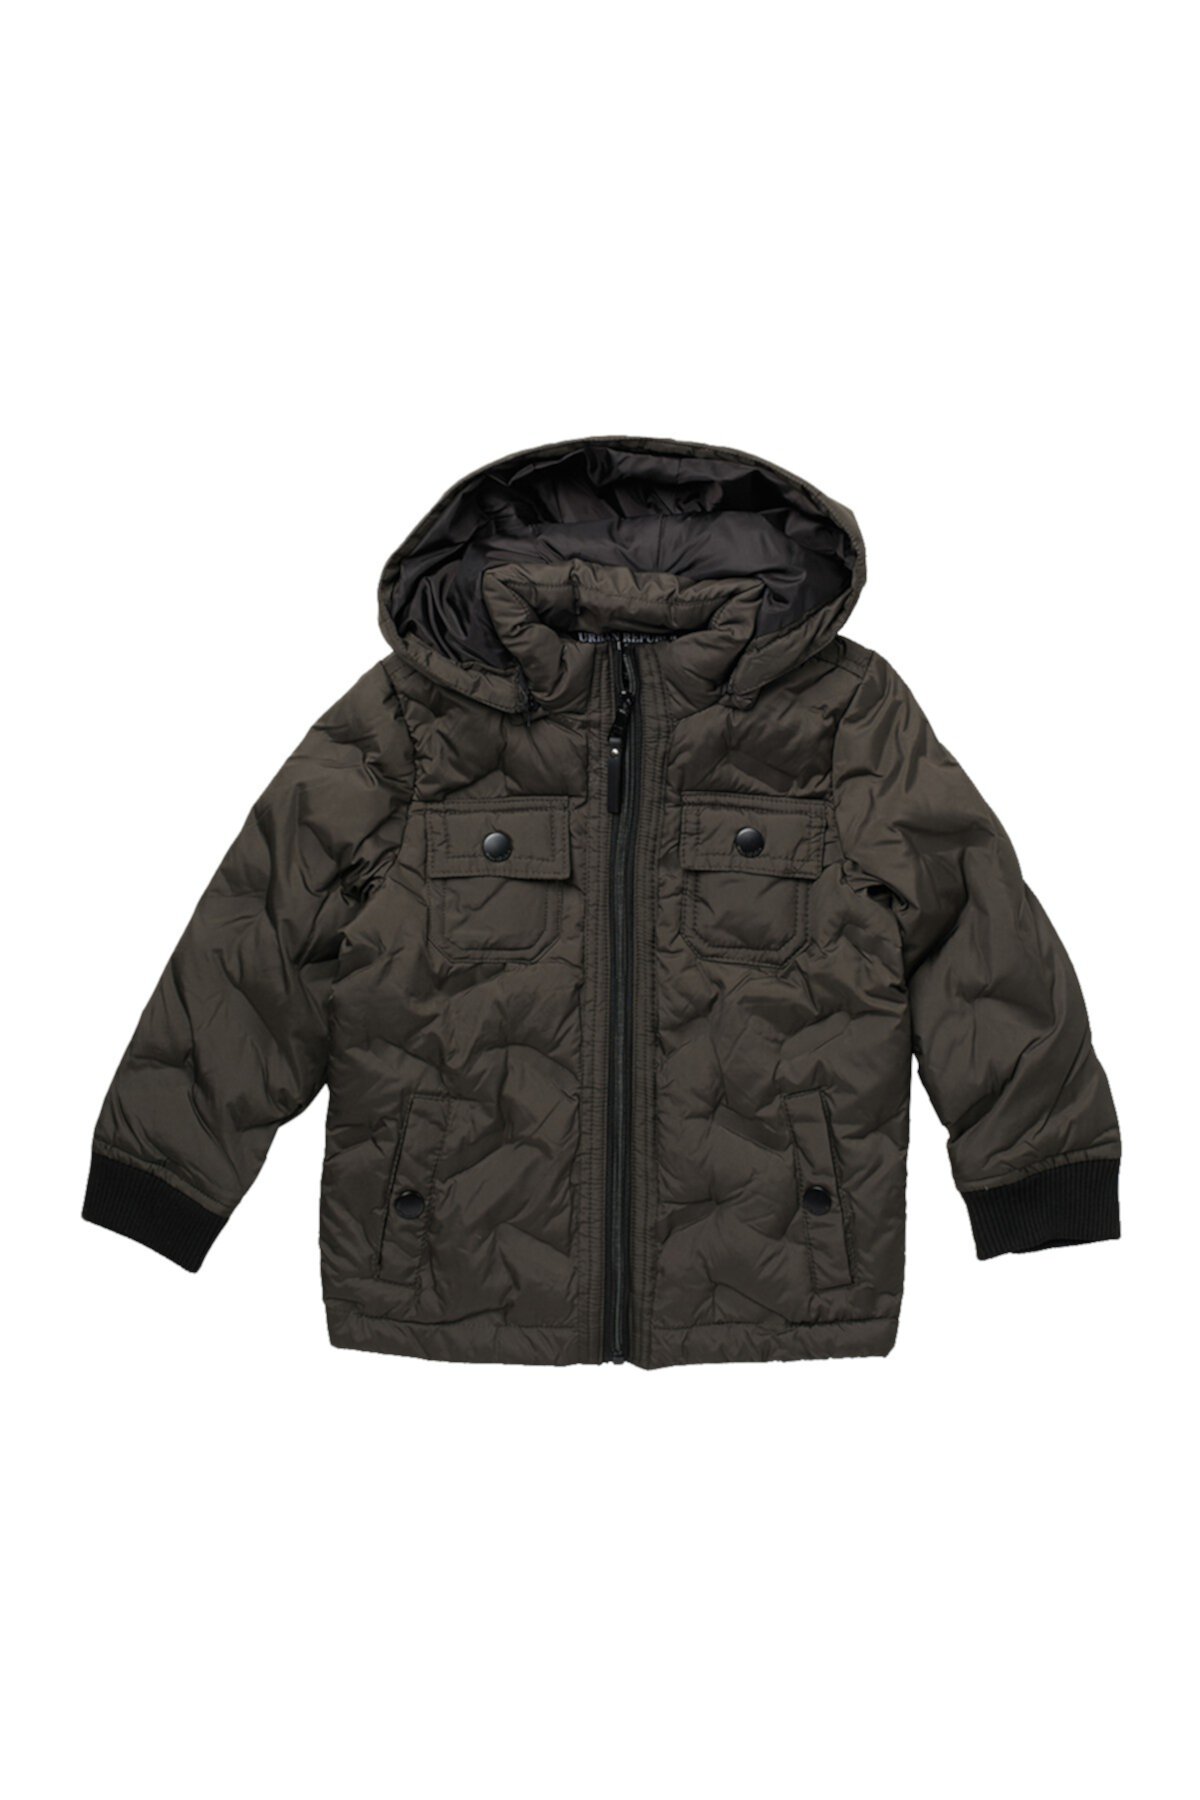 Стеганая куртка с термоклеенной молнией спереди (для маленьких мальчиков) Urban Republic